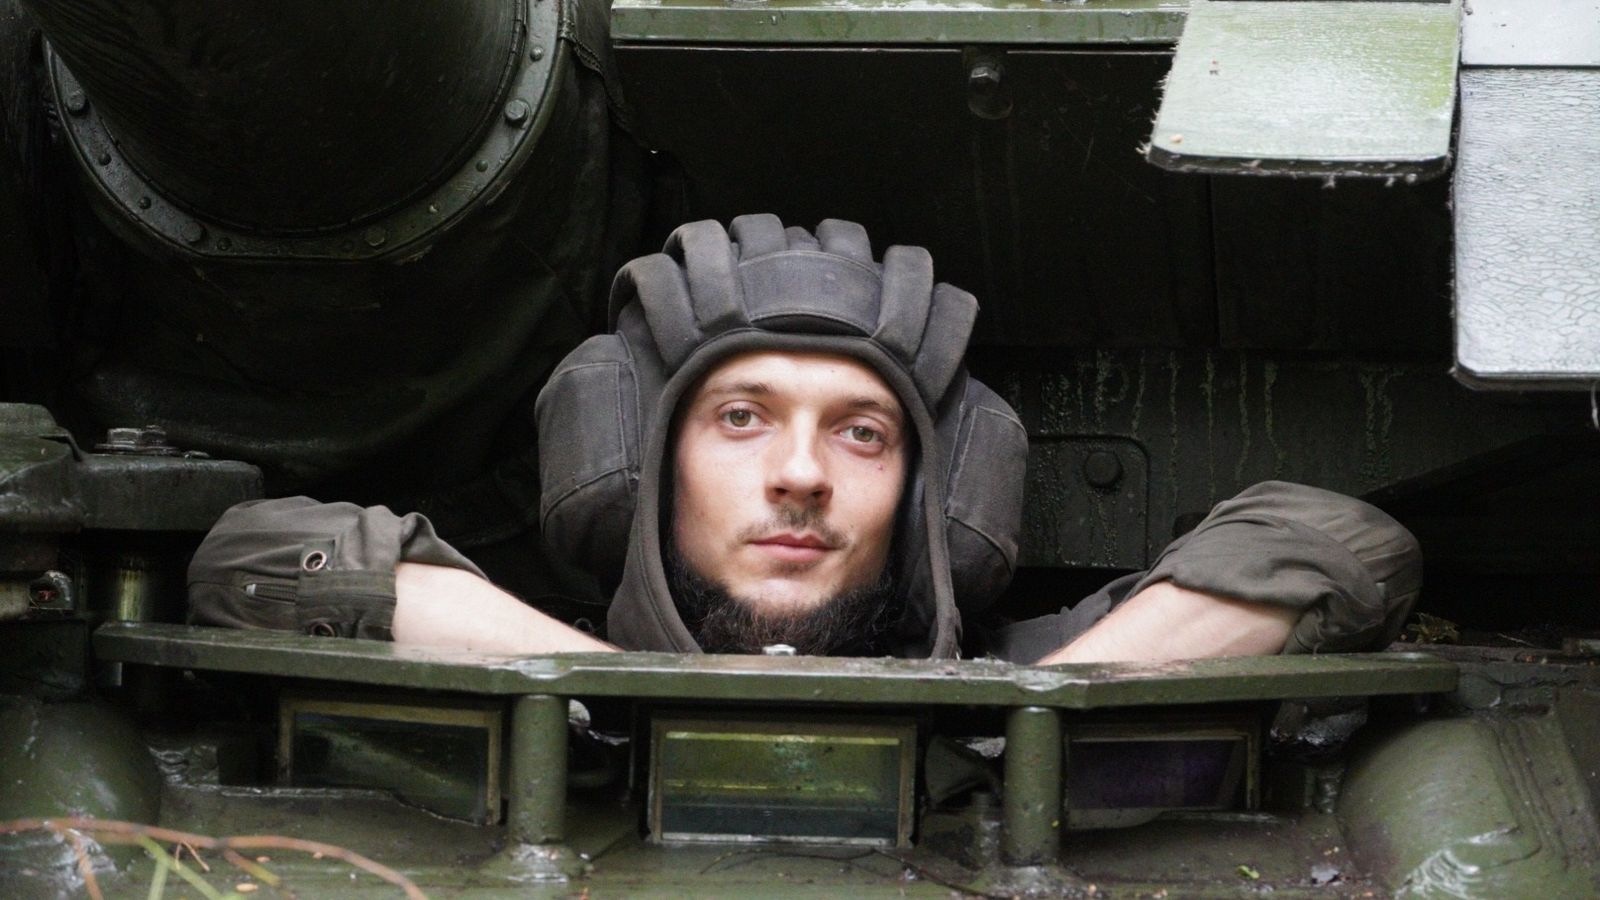 ウクライナ人は森の中に戦車を隠し、ロシア軍から鎧を盗みます| 世界のニュース